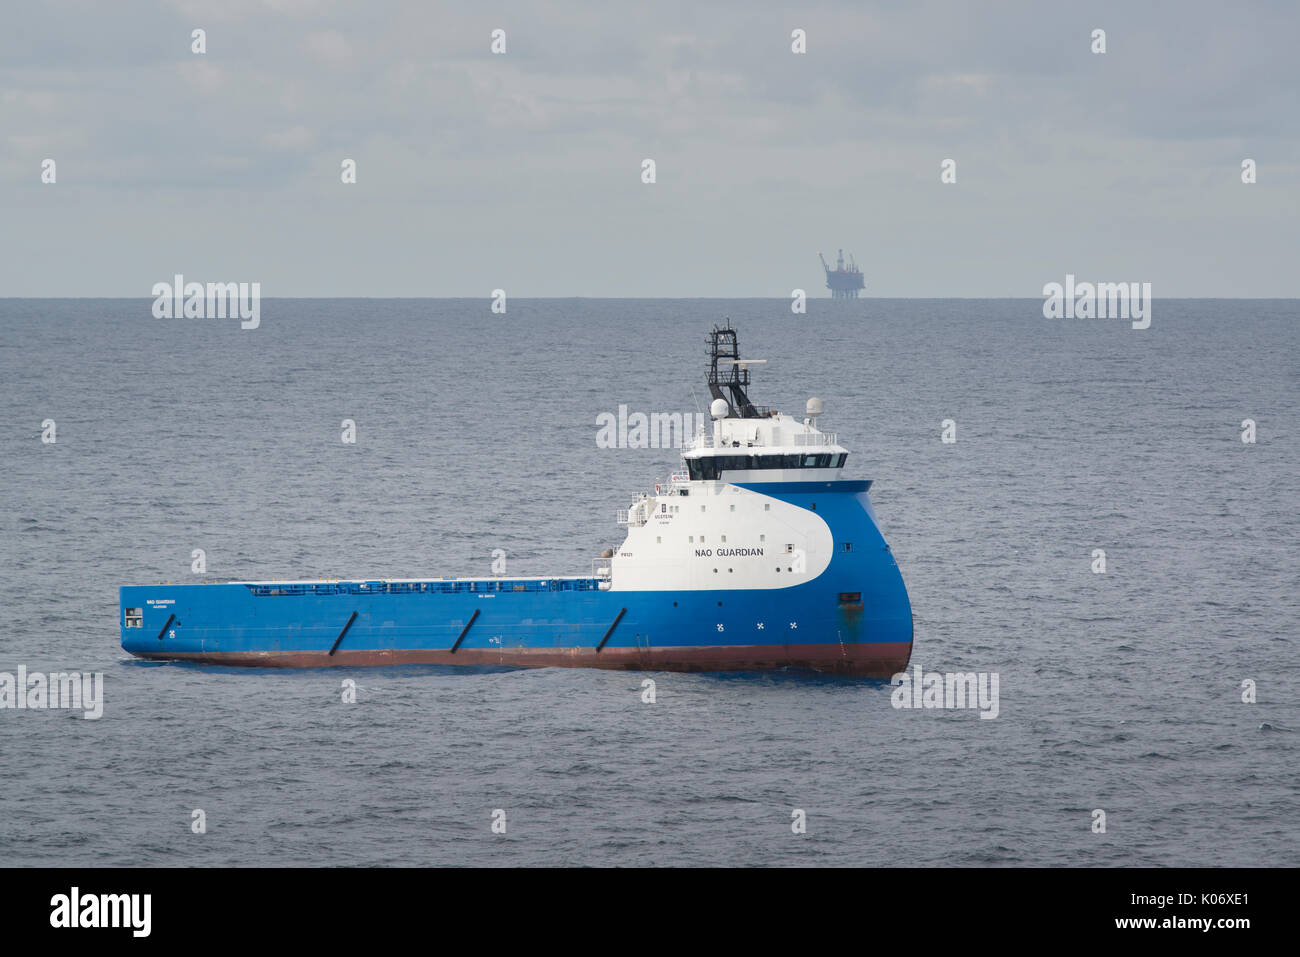 Le navire de ravitaillement nad Guardian, qui travaille en mer du Nord, fournit l'industrie pétrolière et gazière. Crédit: LEE RAMSDEN / ALAY Banque D'Images